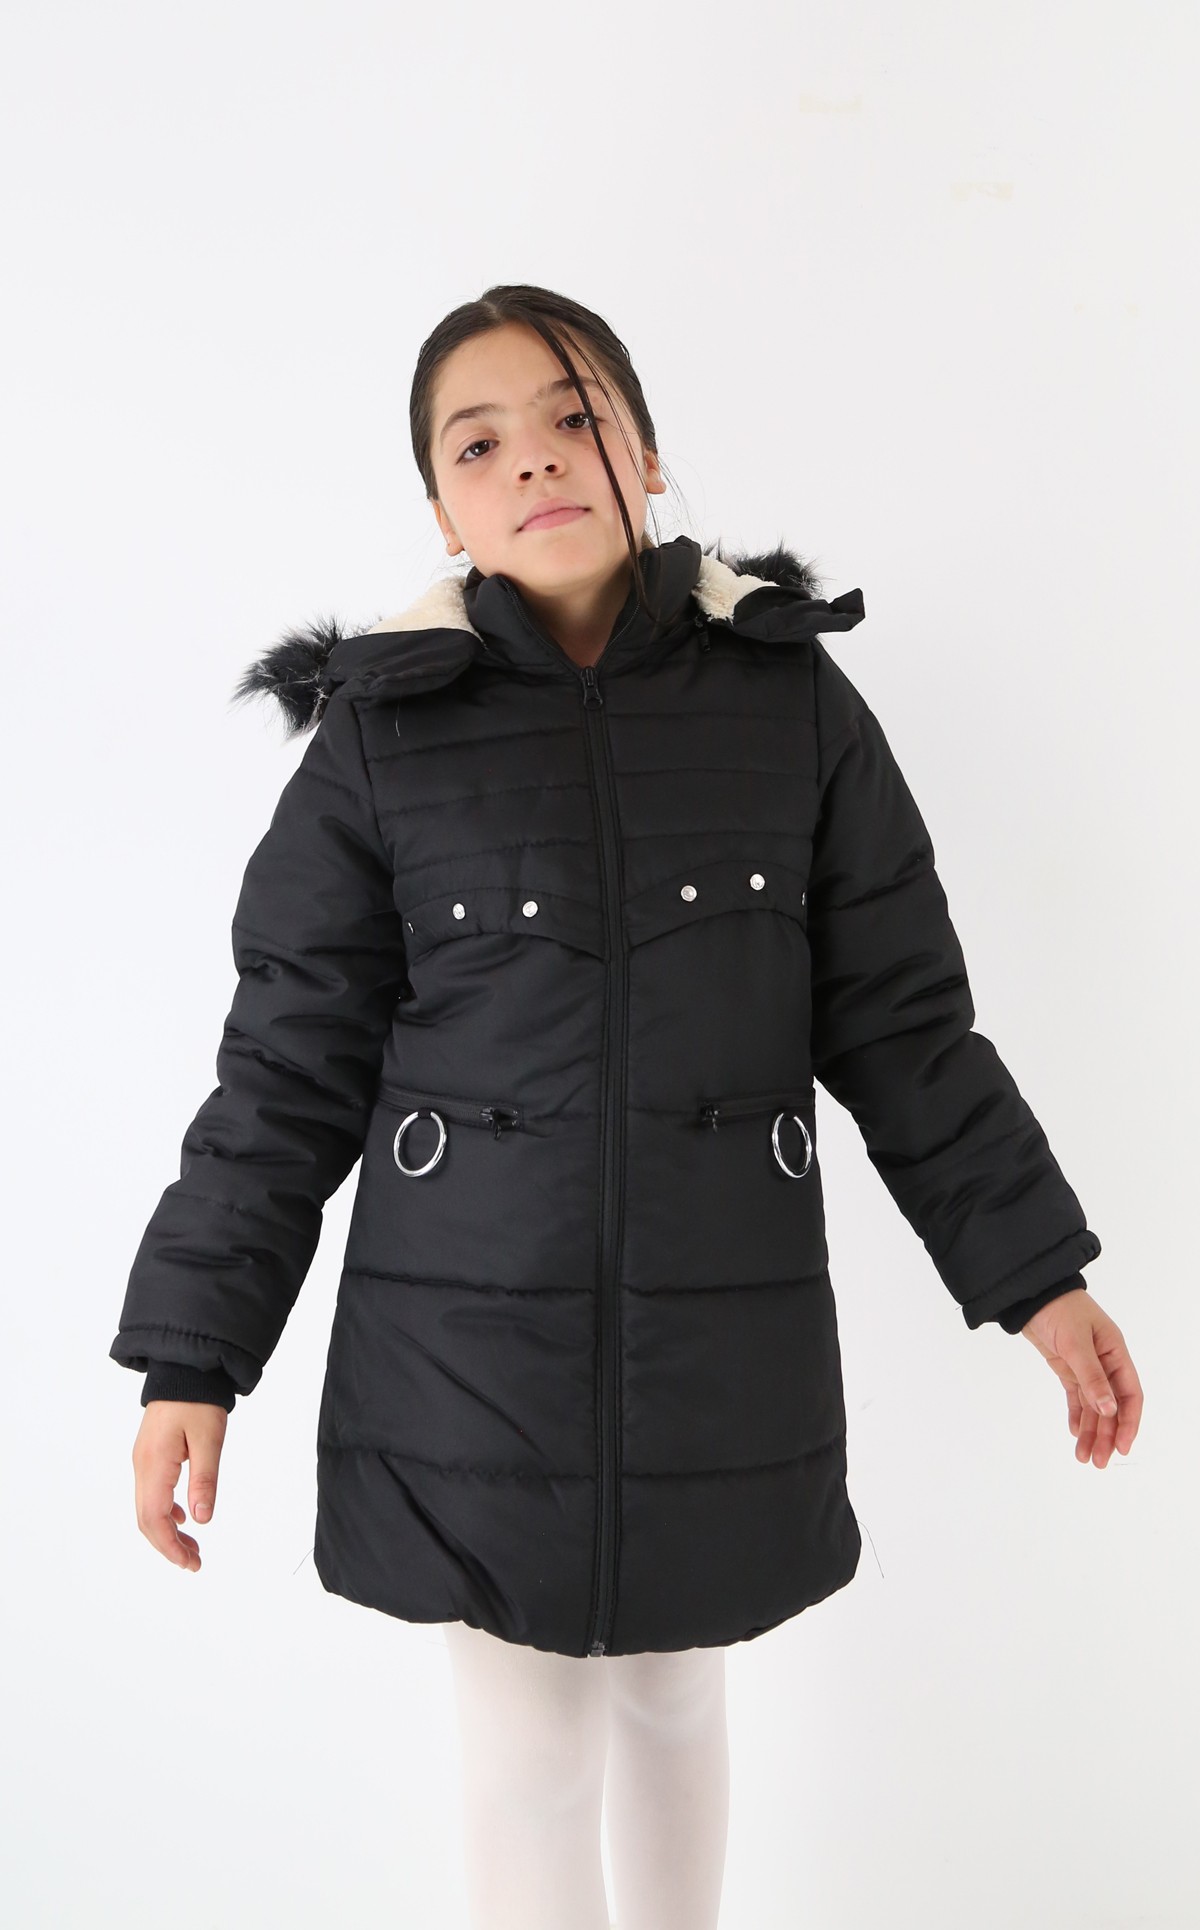 Polarlı Kışlık Kız Çocuk Montu - Starlet - Siyah